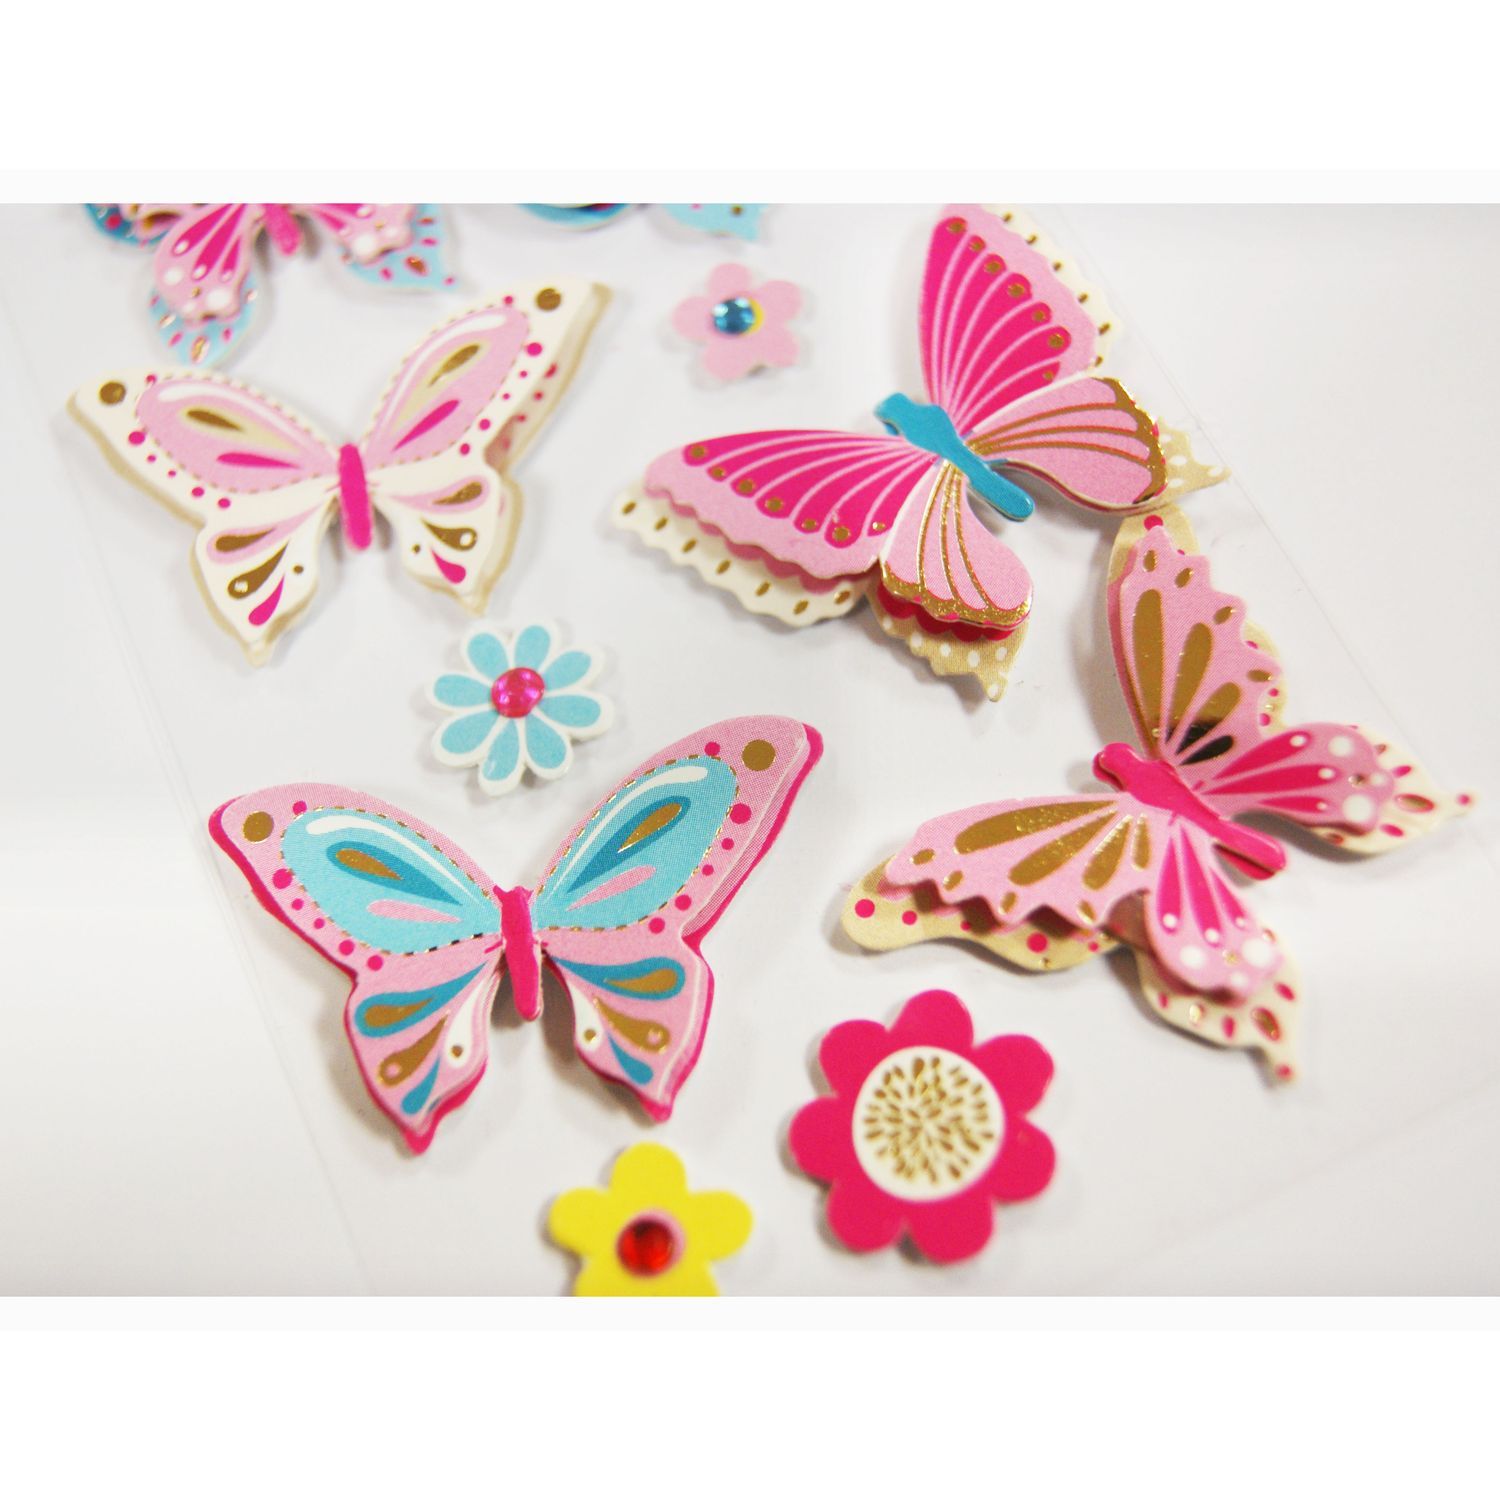 PAPILLONS RELIEF 3D - Stickers repositionnables papillons en relief 3D